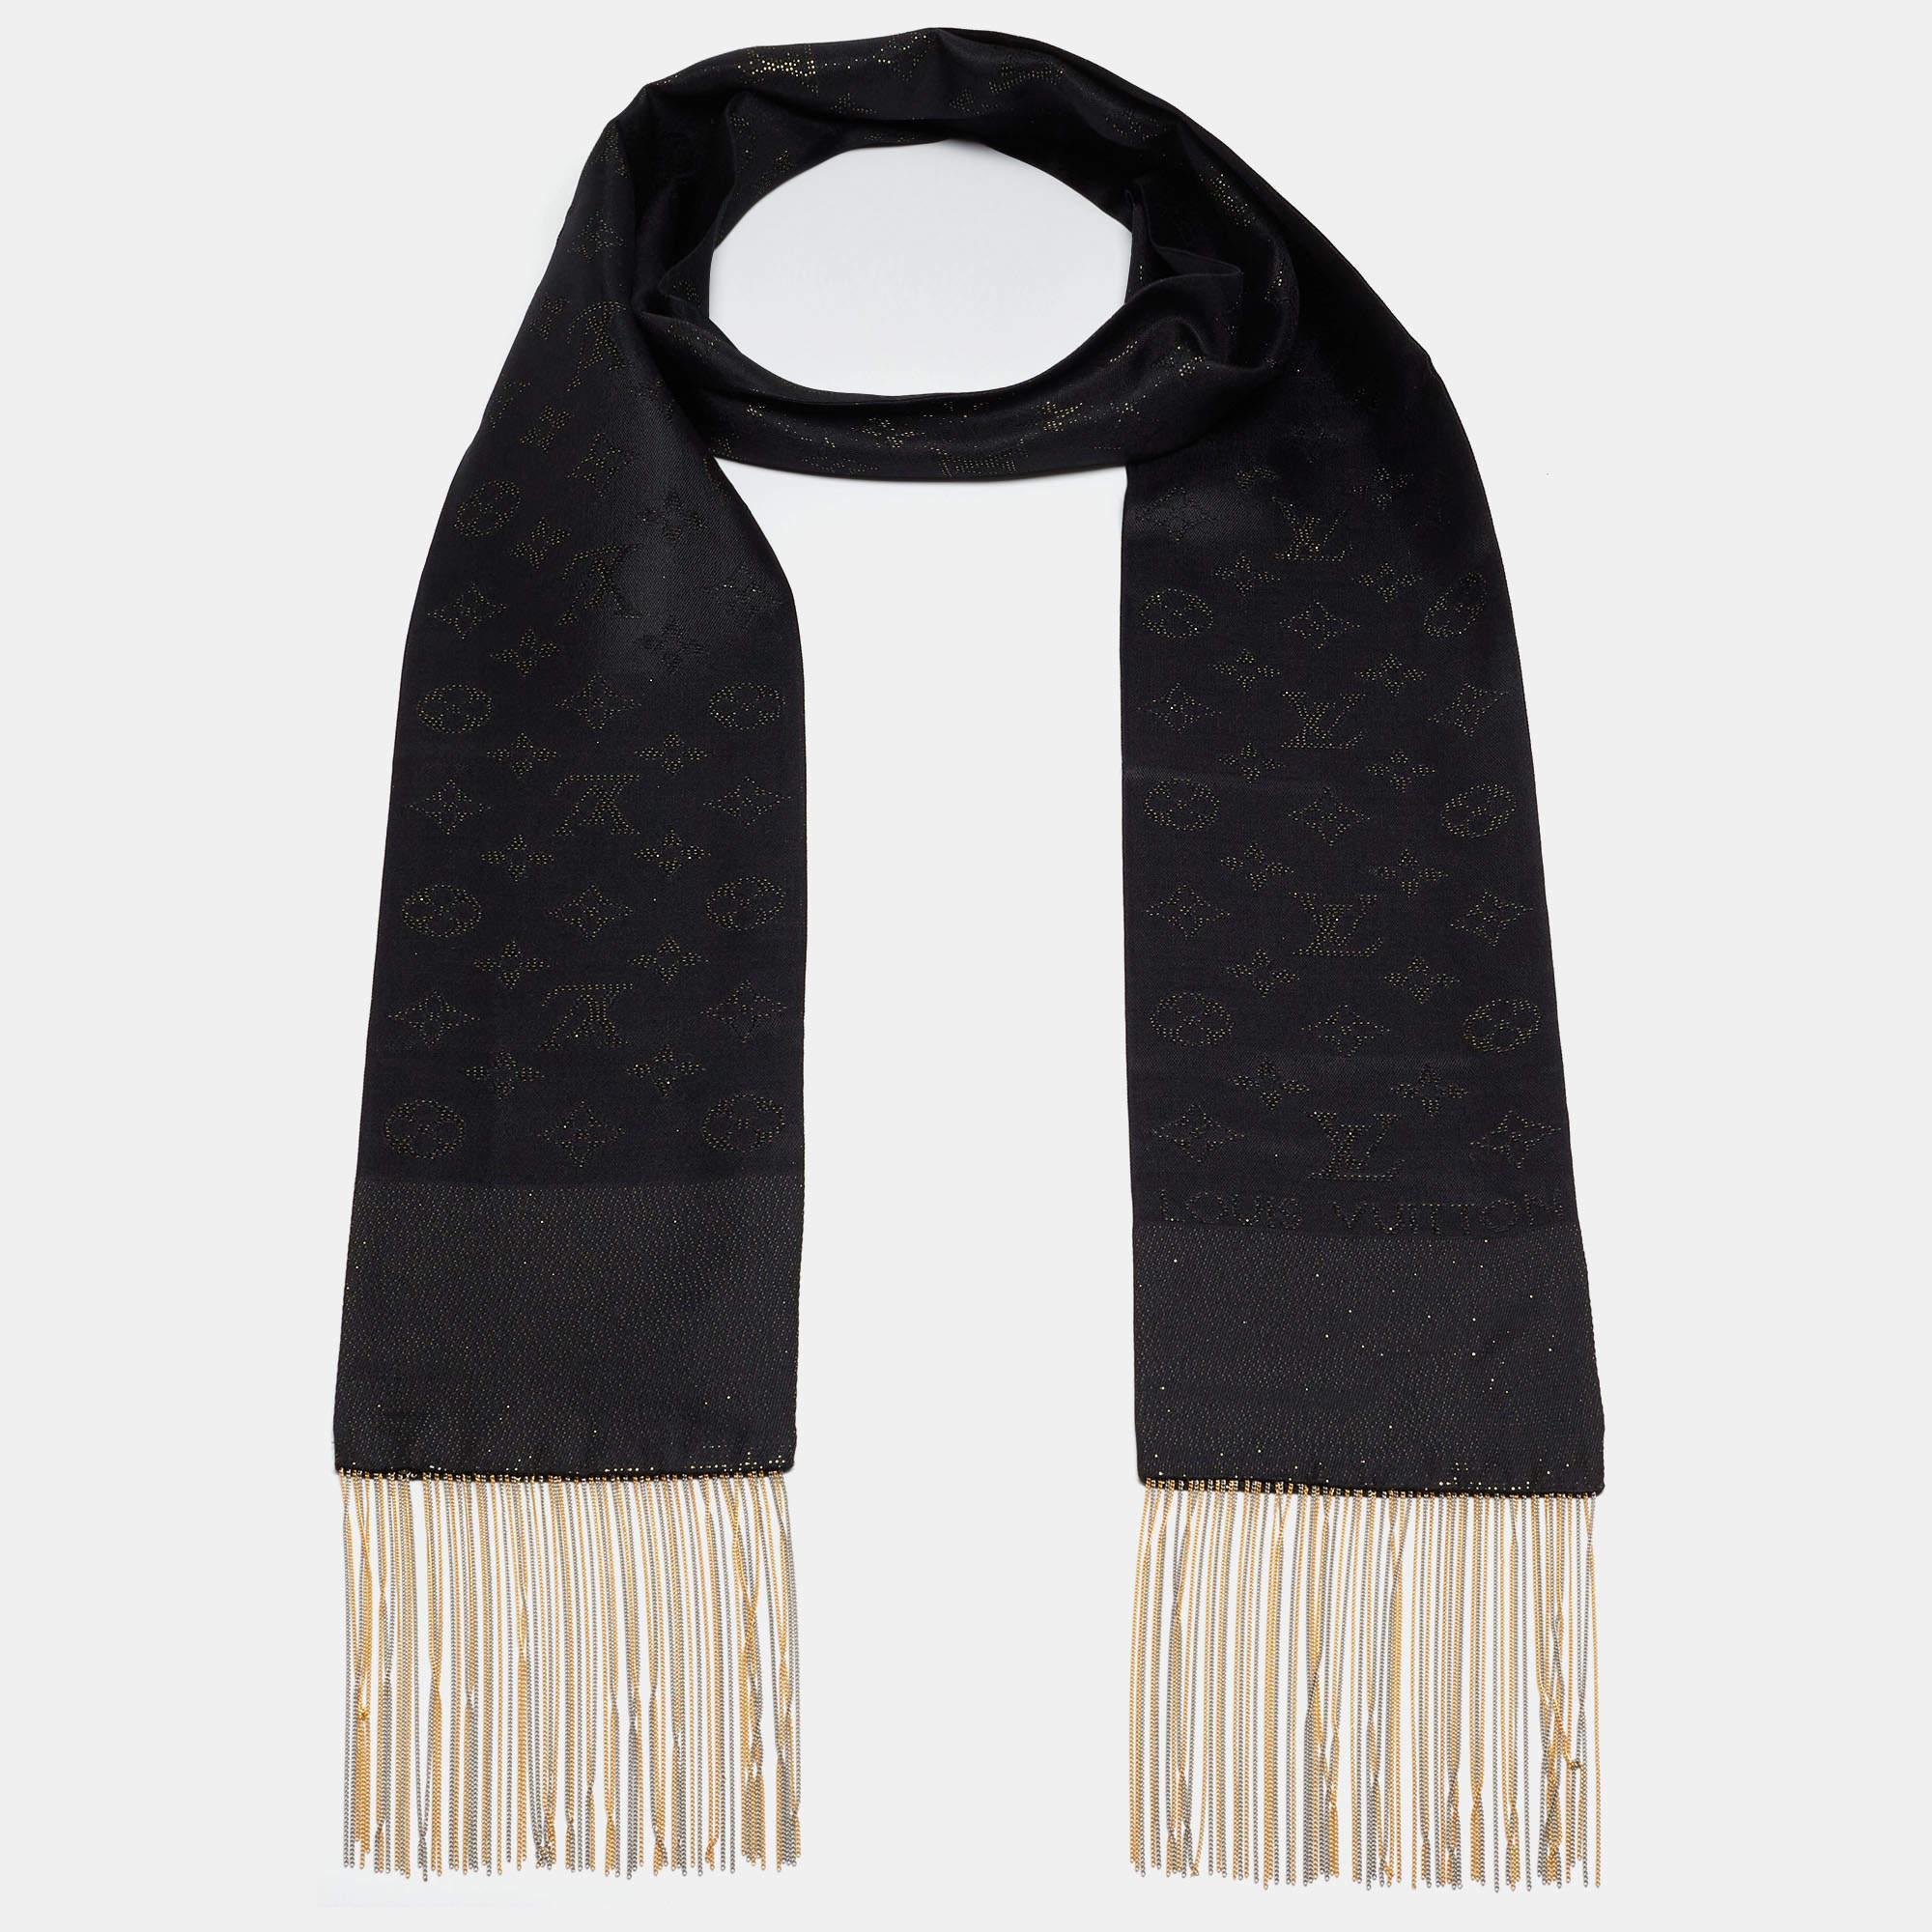 Élevez votre style avec ce foulard en soie Louis Vuitton méticuleusement confectionné. Des accents de monogramme et un design intemporel s'unissent pour créer un accessoire exquis qui respire la sophistication et le style.

